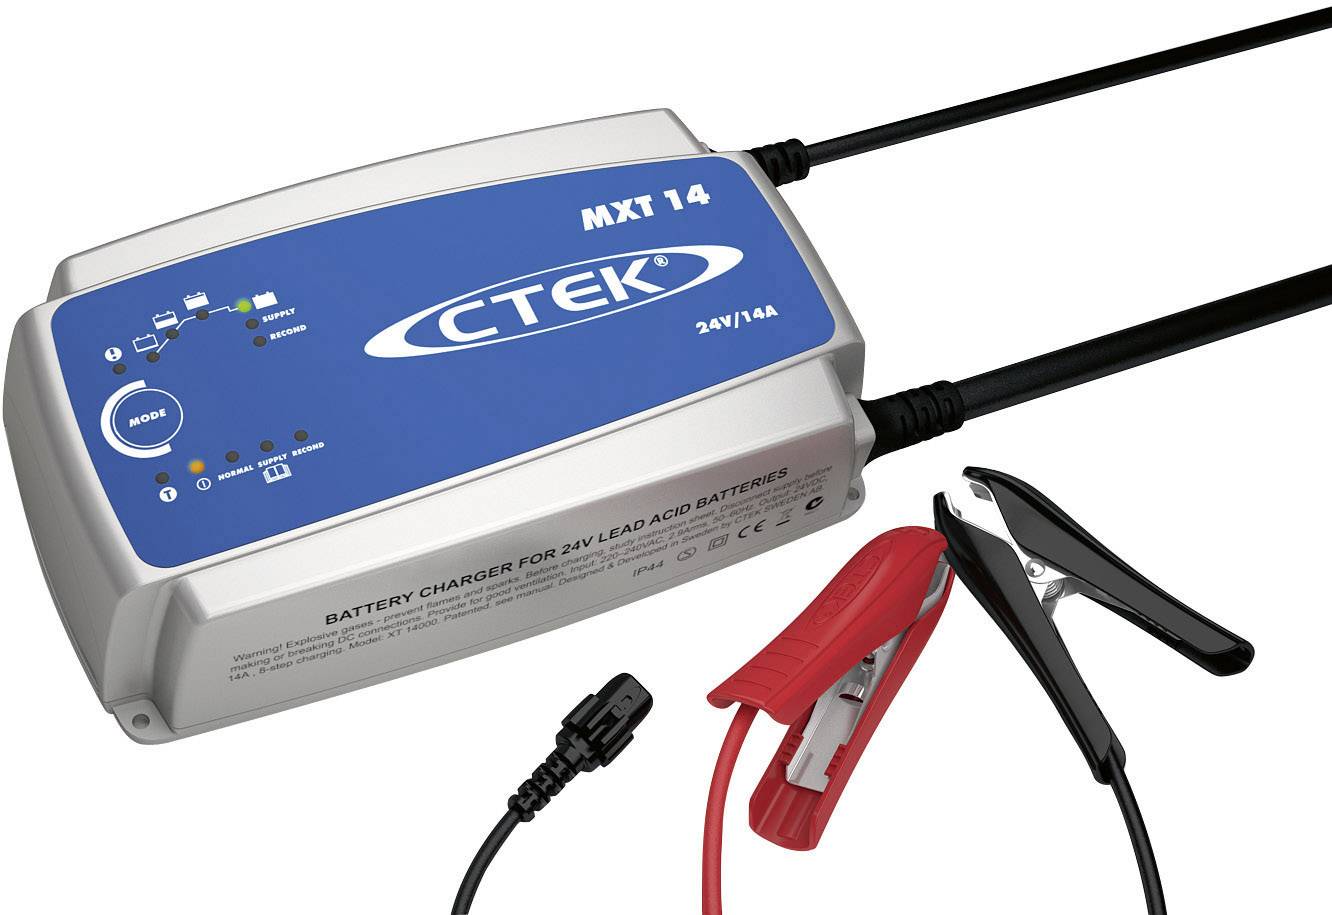 Chargeur automatique CTEK 56-733 24 V - Conrad Electronic France